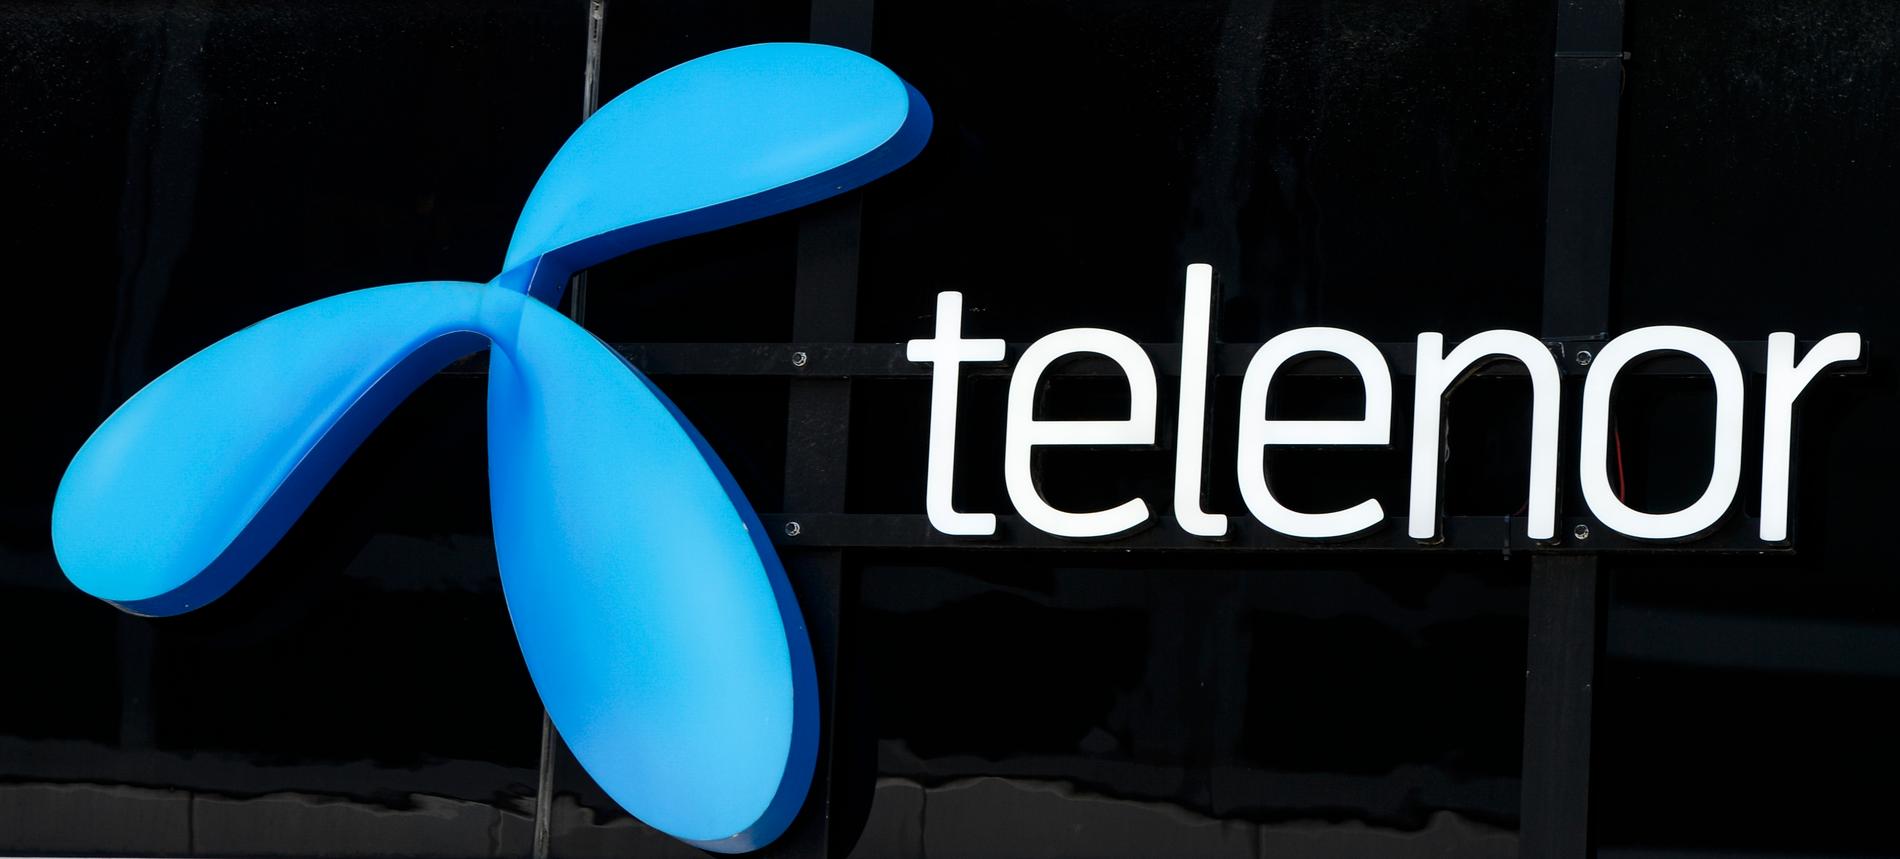 Mobiloperatören Telenor har drabbats av ett intrång där 30 000 kunduppgifter kan ha läckt ut. Arkivbild.